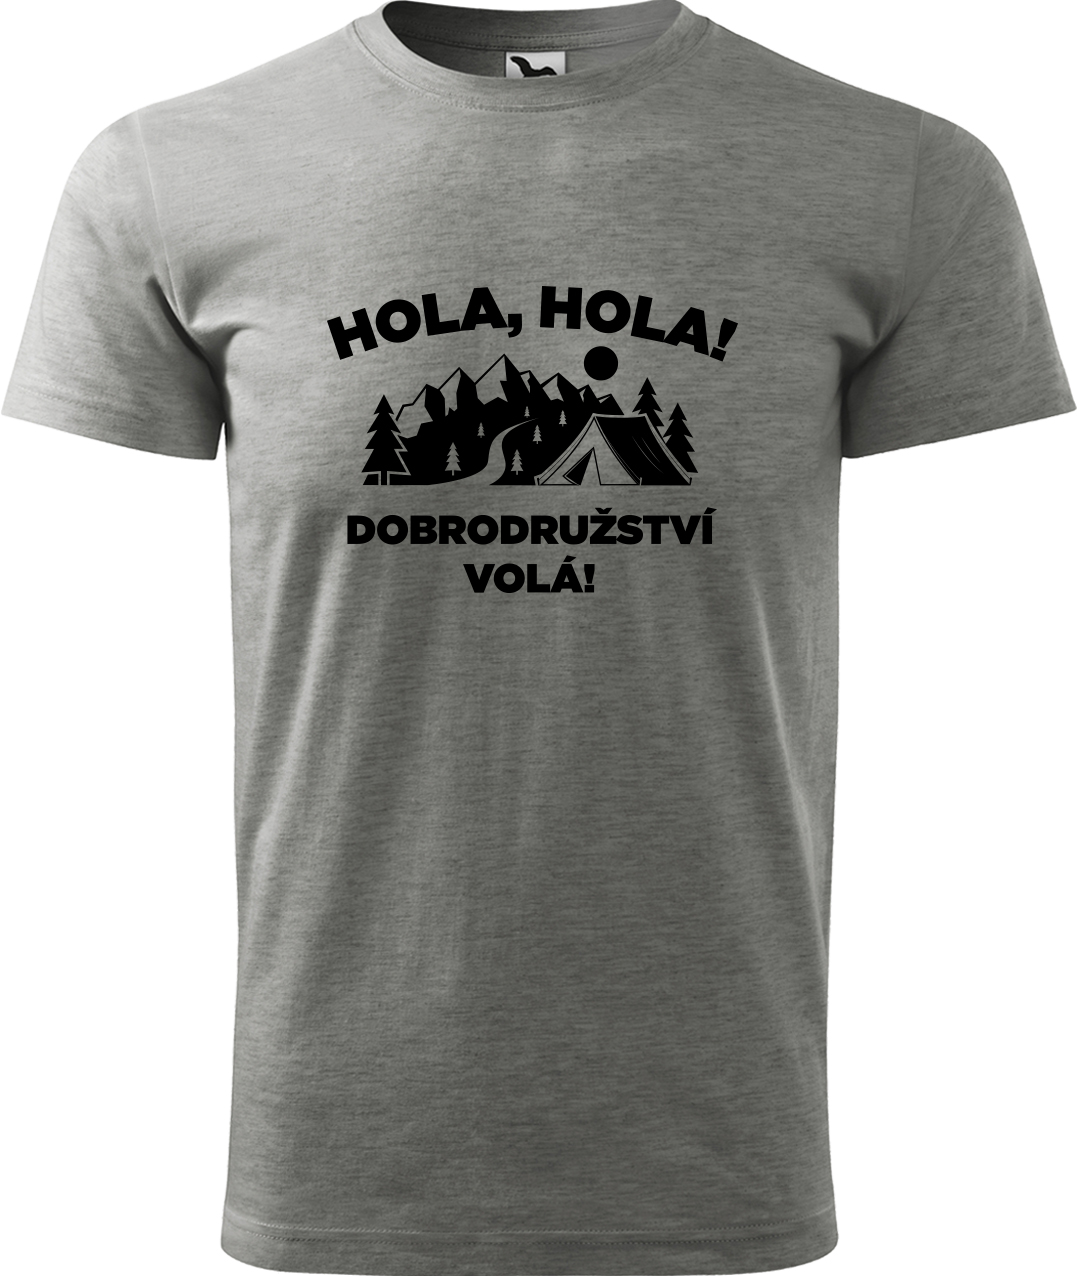 Pánské cestovatelské tričko - Hola hola! Dobrodružství volá! Velikost: 2XL, Barva: Tmavě šedý melír (12), Střih: pánský